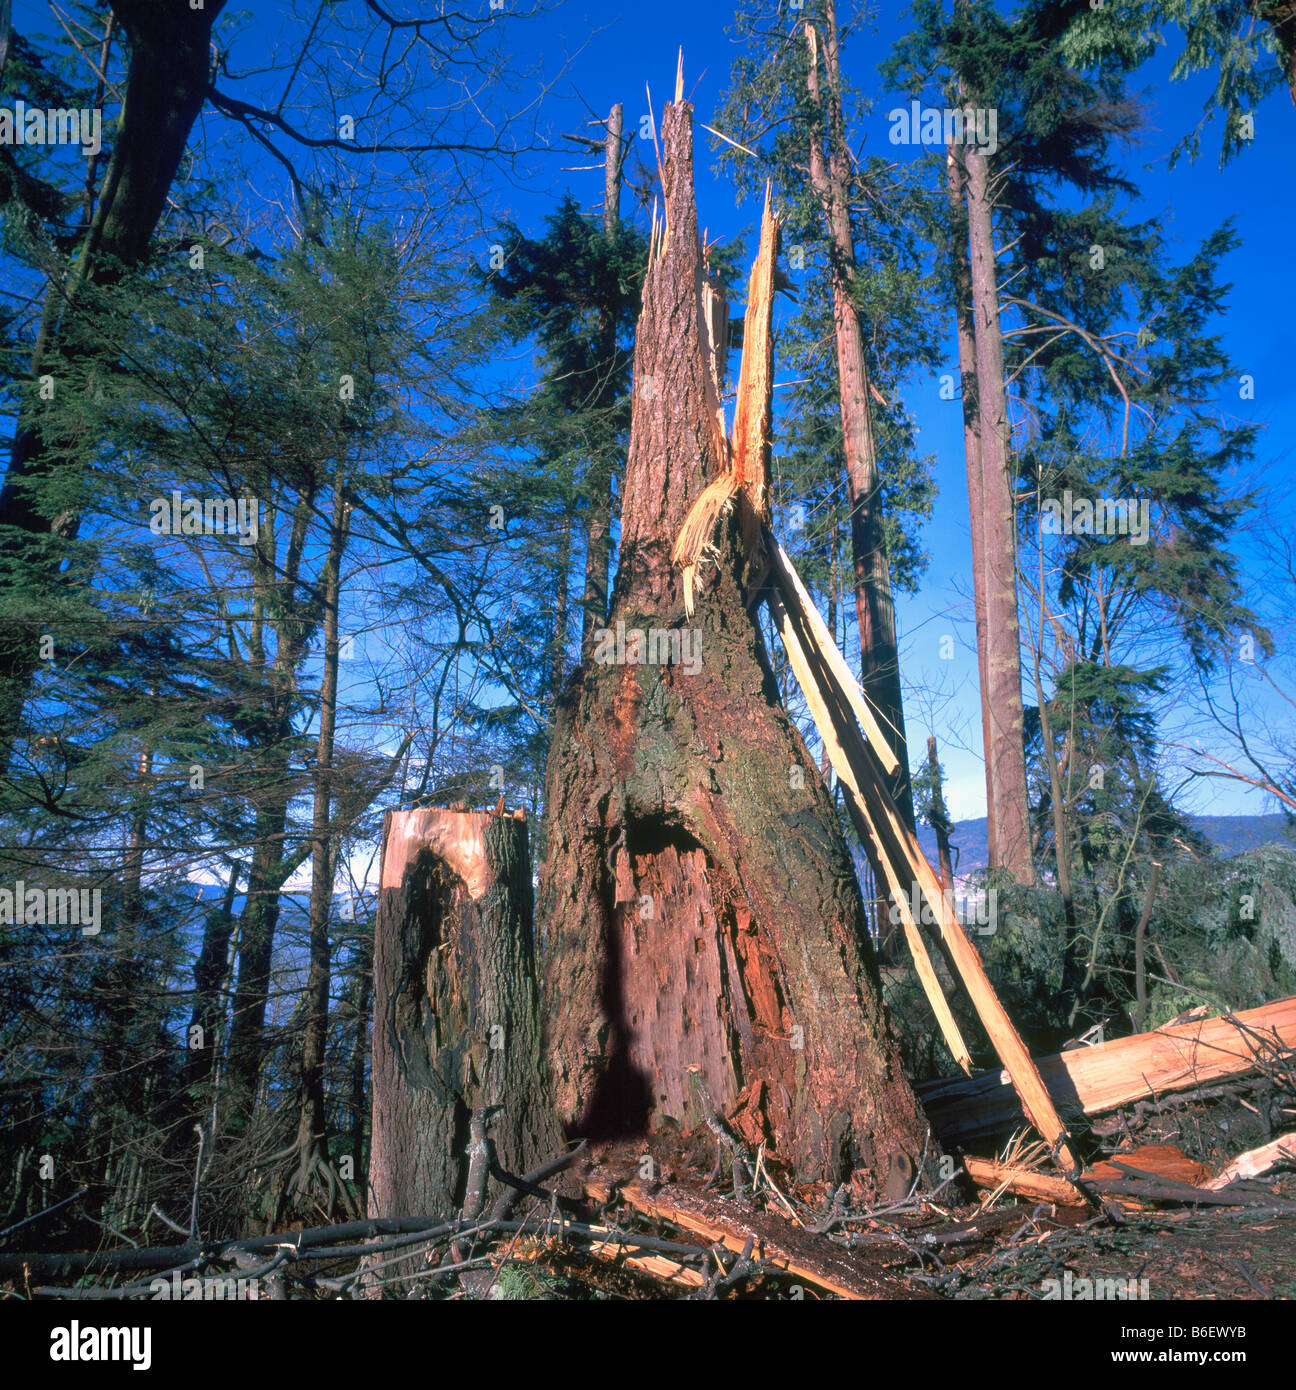 Stanley Park, Vancouver, BC, Britisch-Kolumbien, Kanada - beschädigt Baum vor Sturm, Sturmschäden und Zerstörung Stockfoto